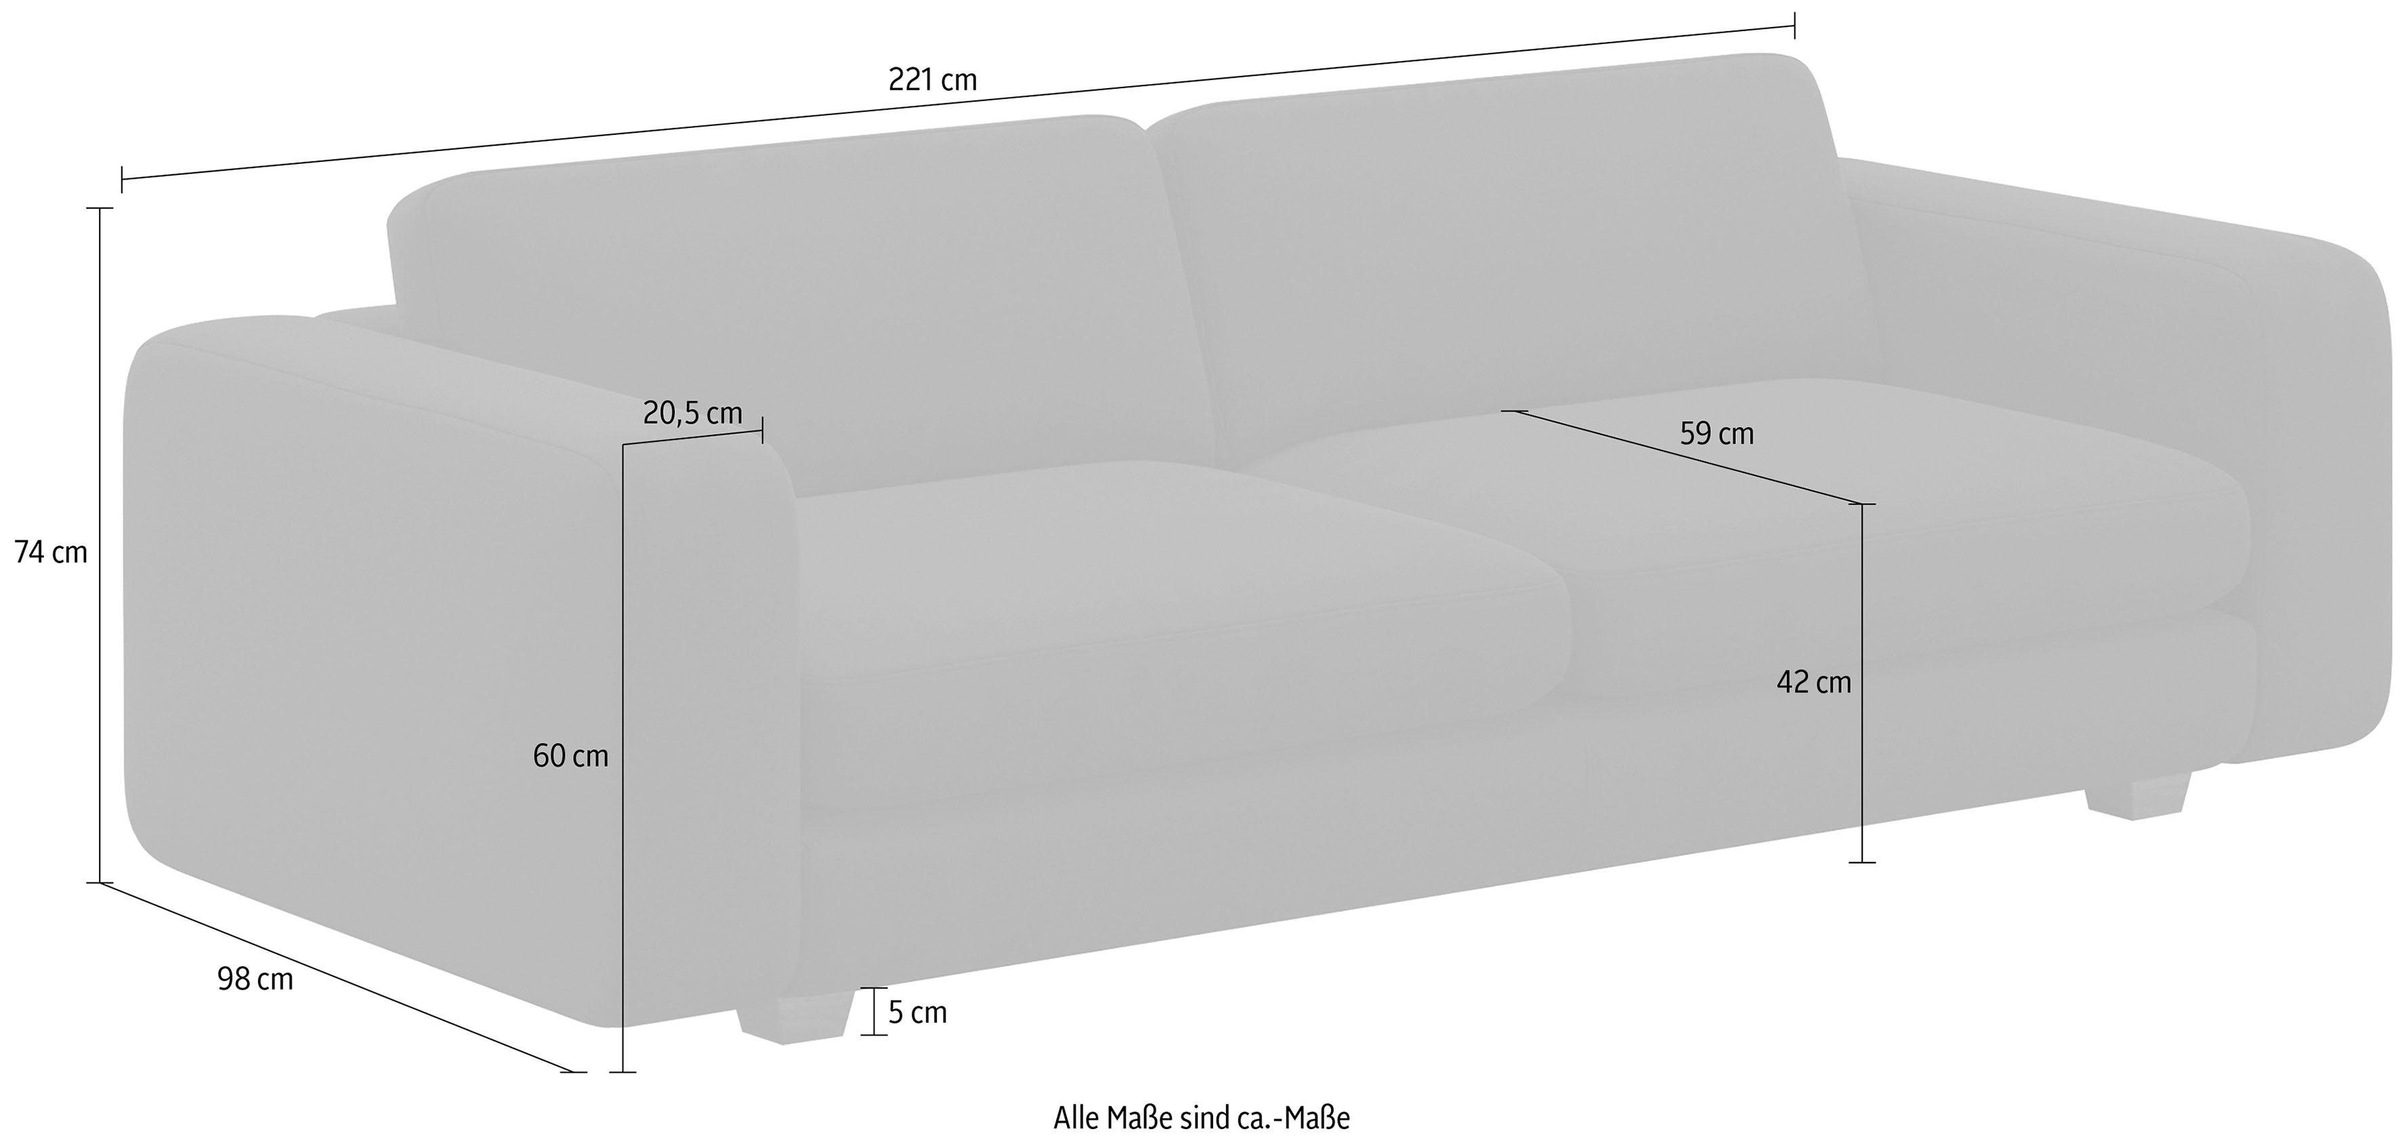 machalke® 3-Sitzer »valentino«, mit breiten Armlehnen, Füße Walnuss, Breite 221 cm